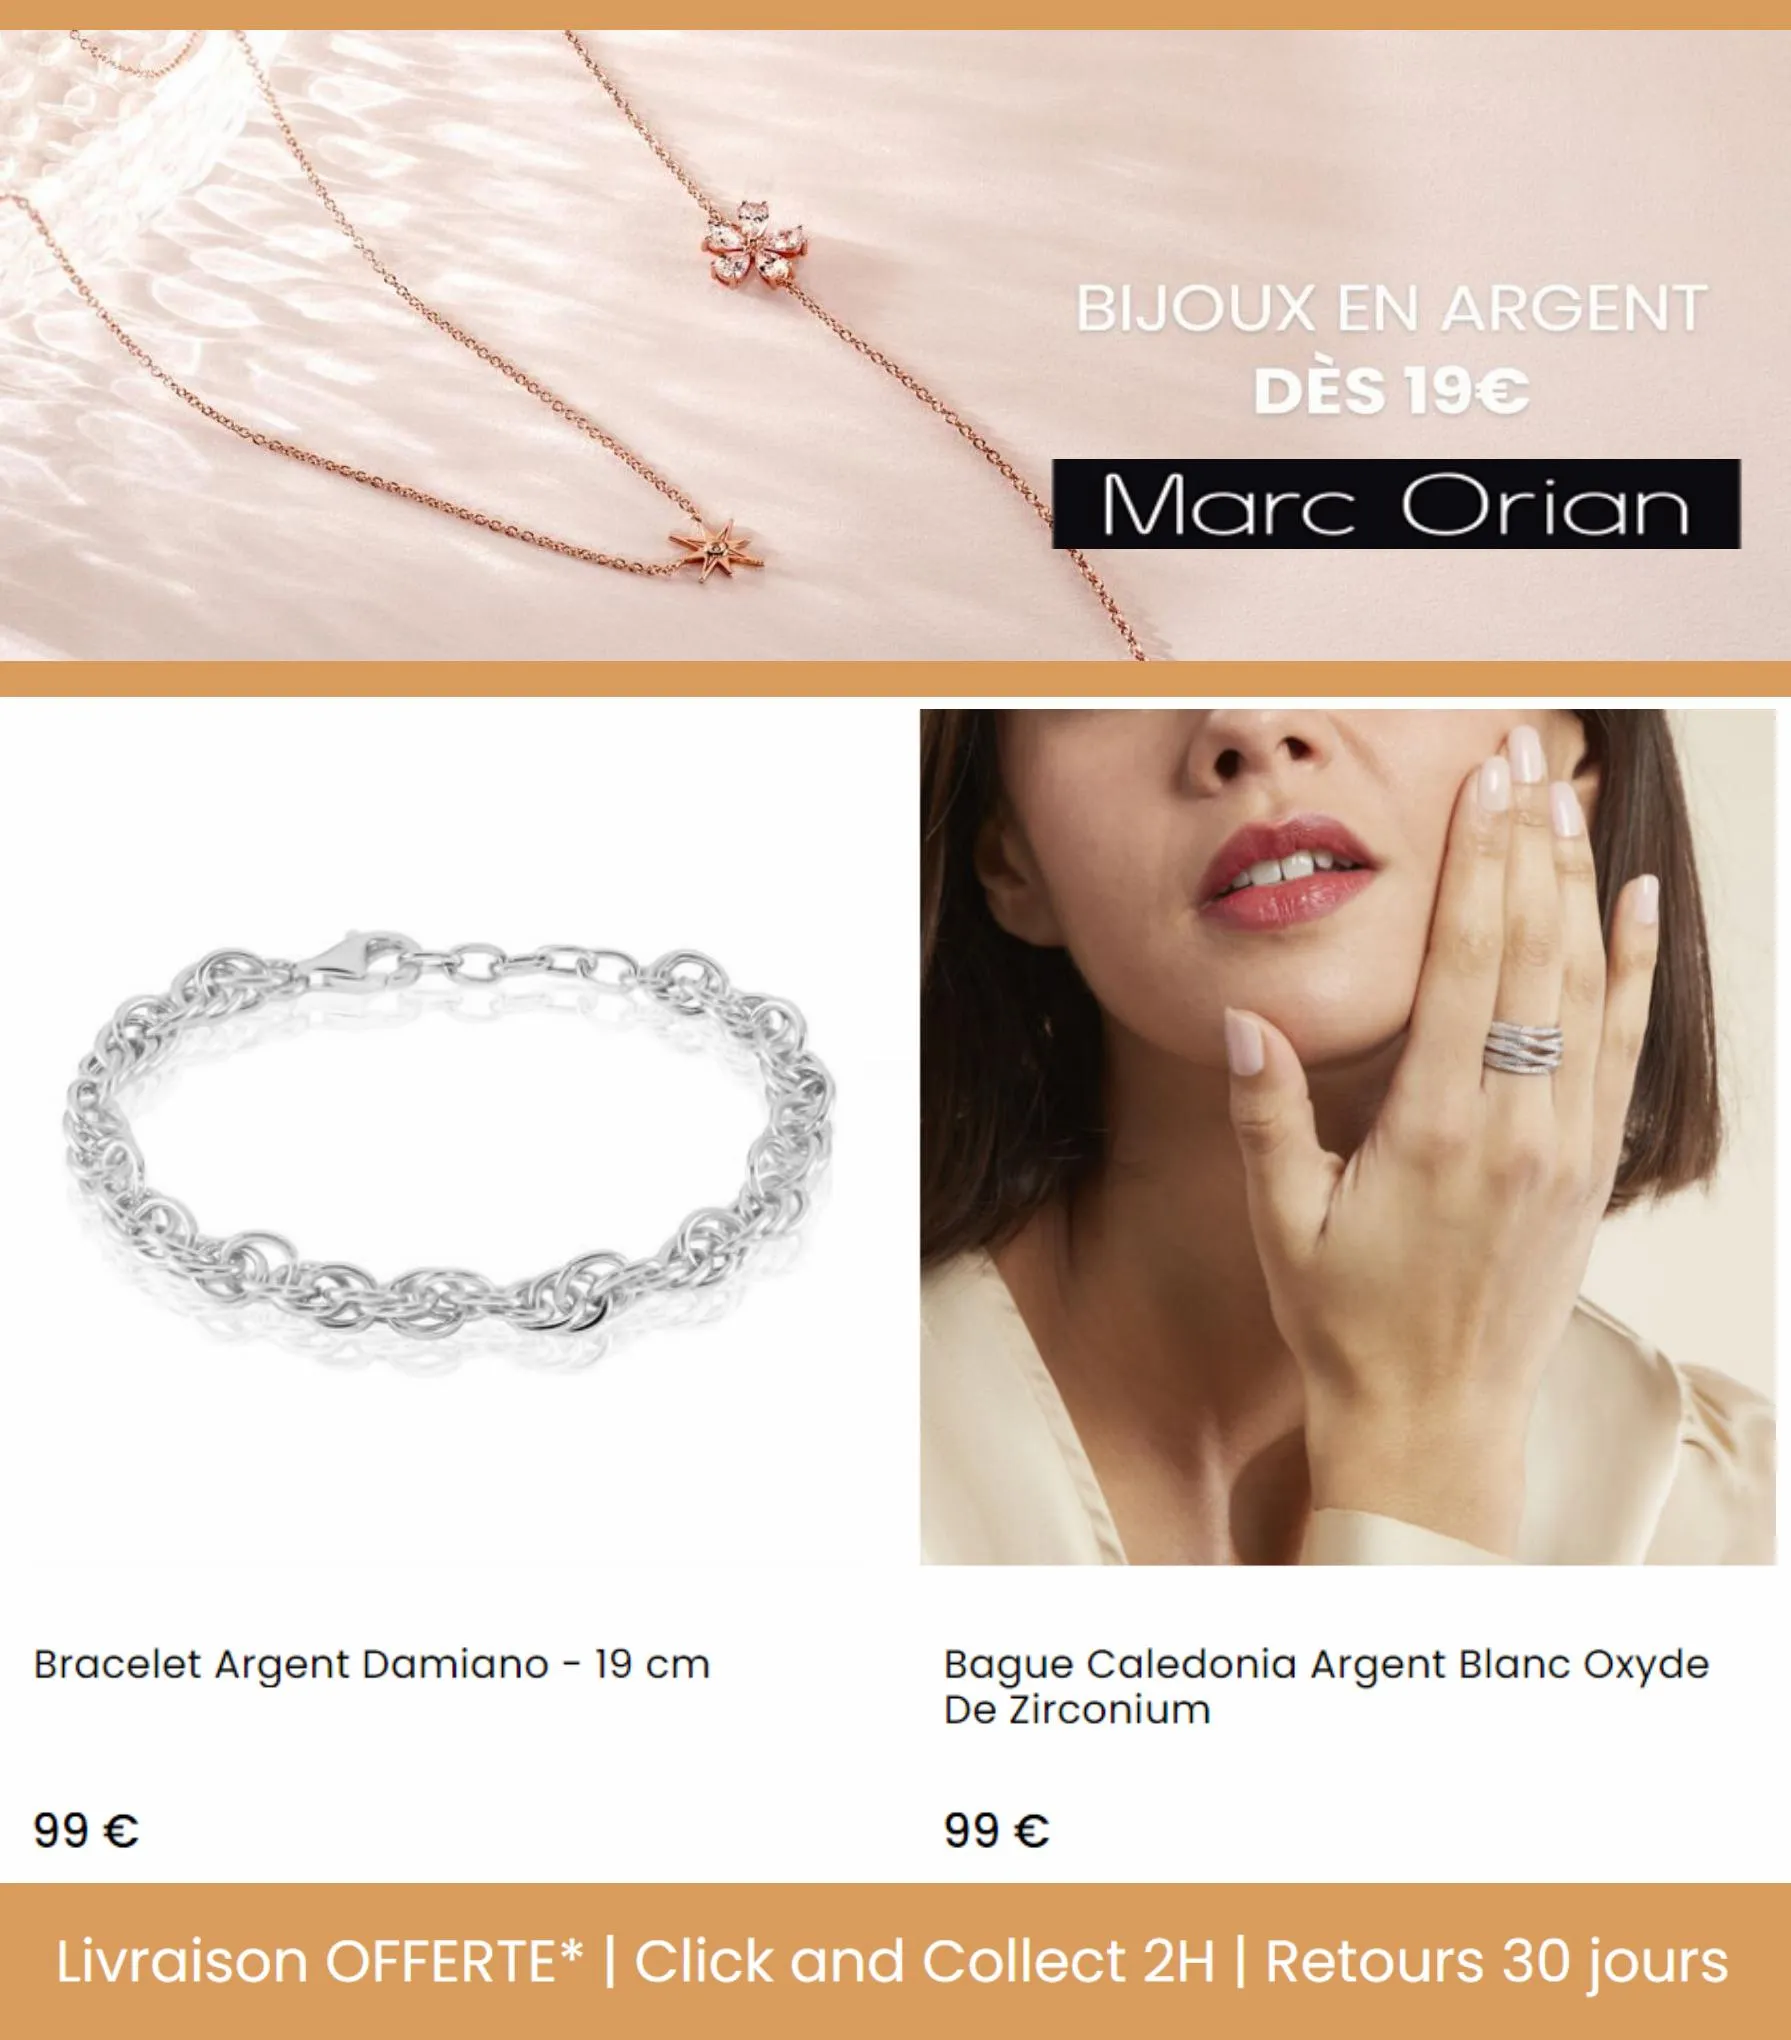 Catalogue Bijoux en Argent dès 19€, page 00007